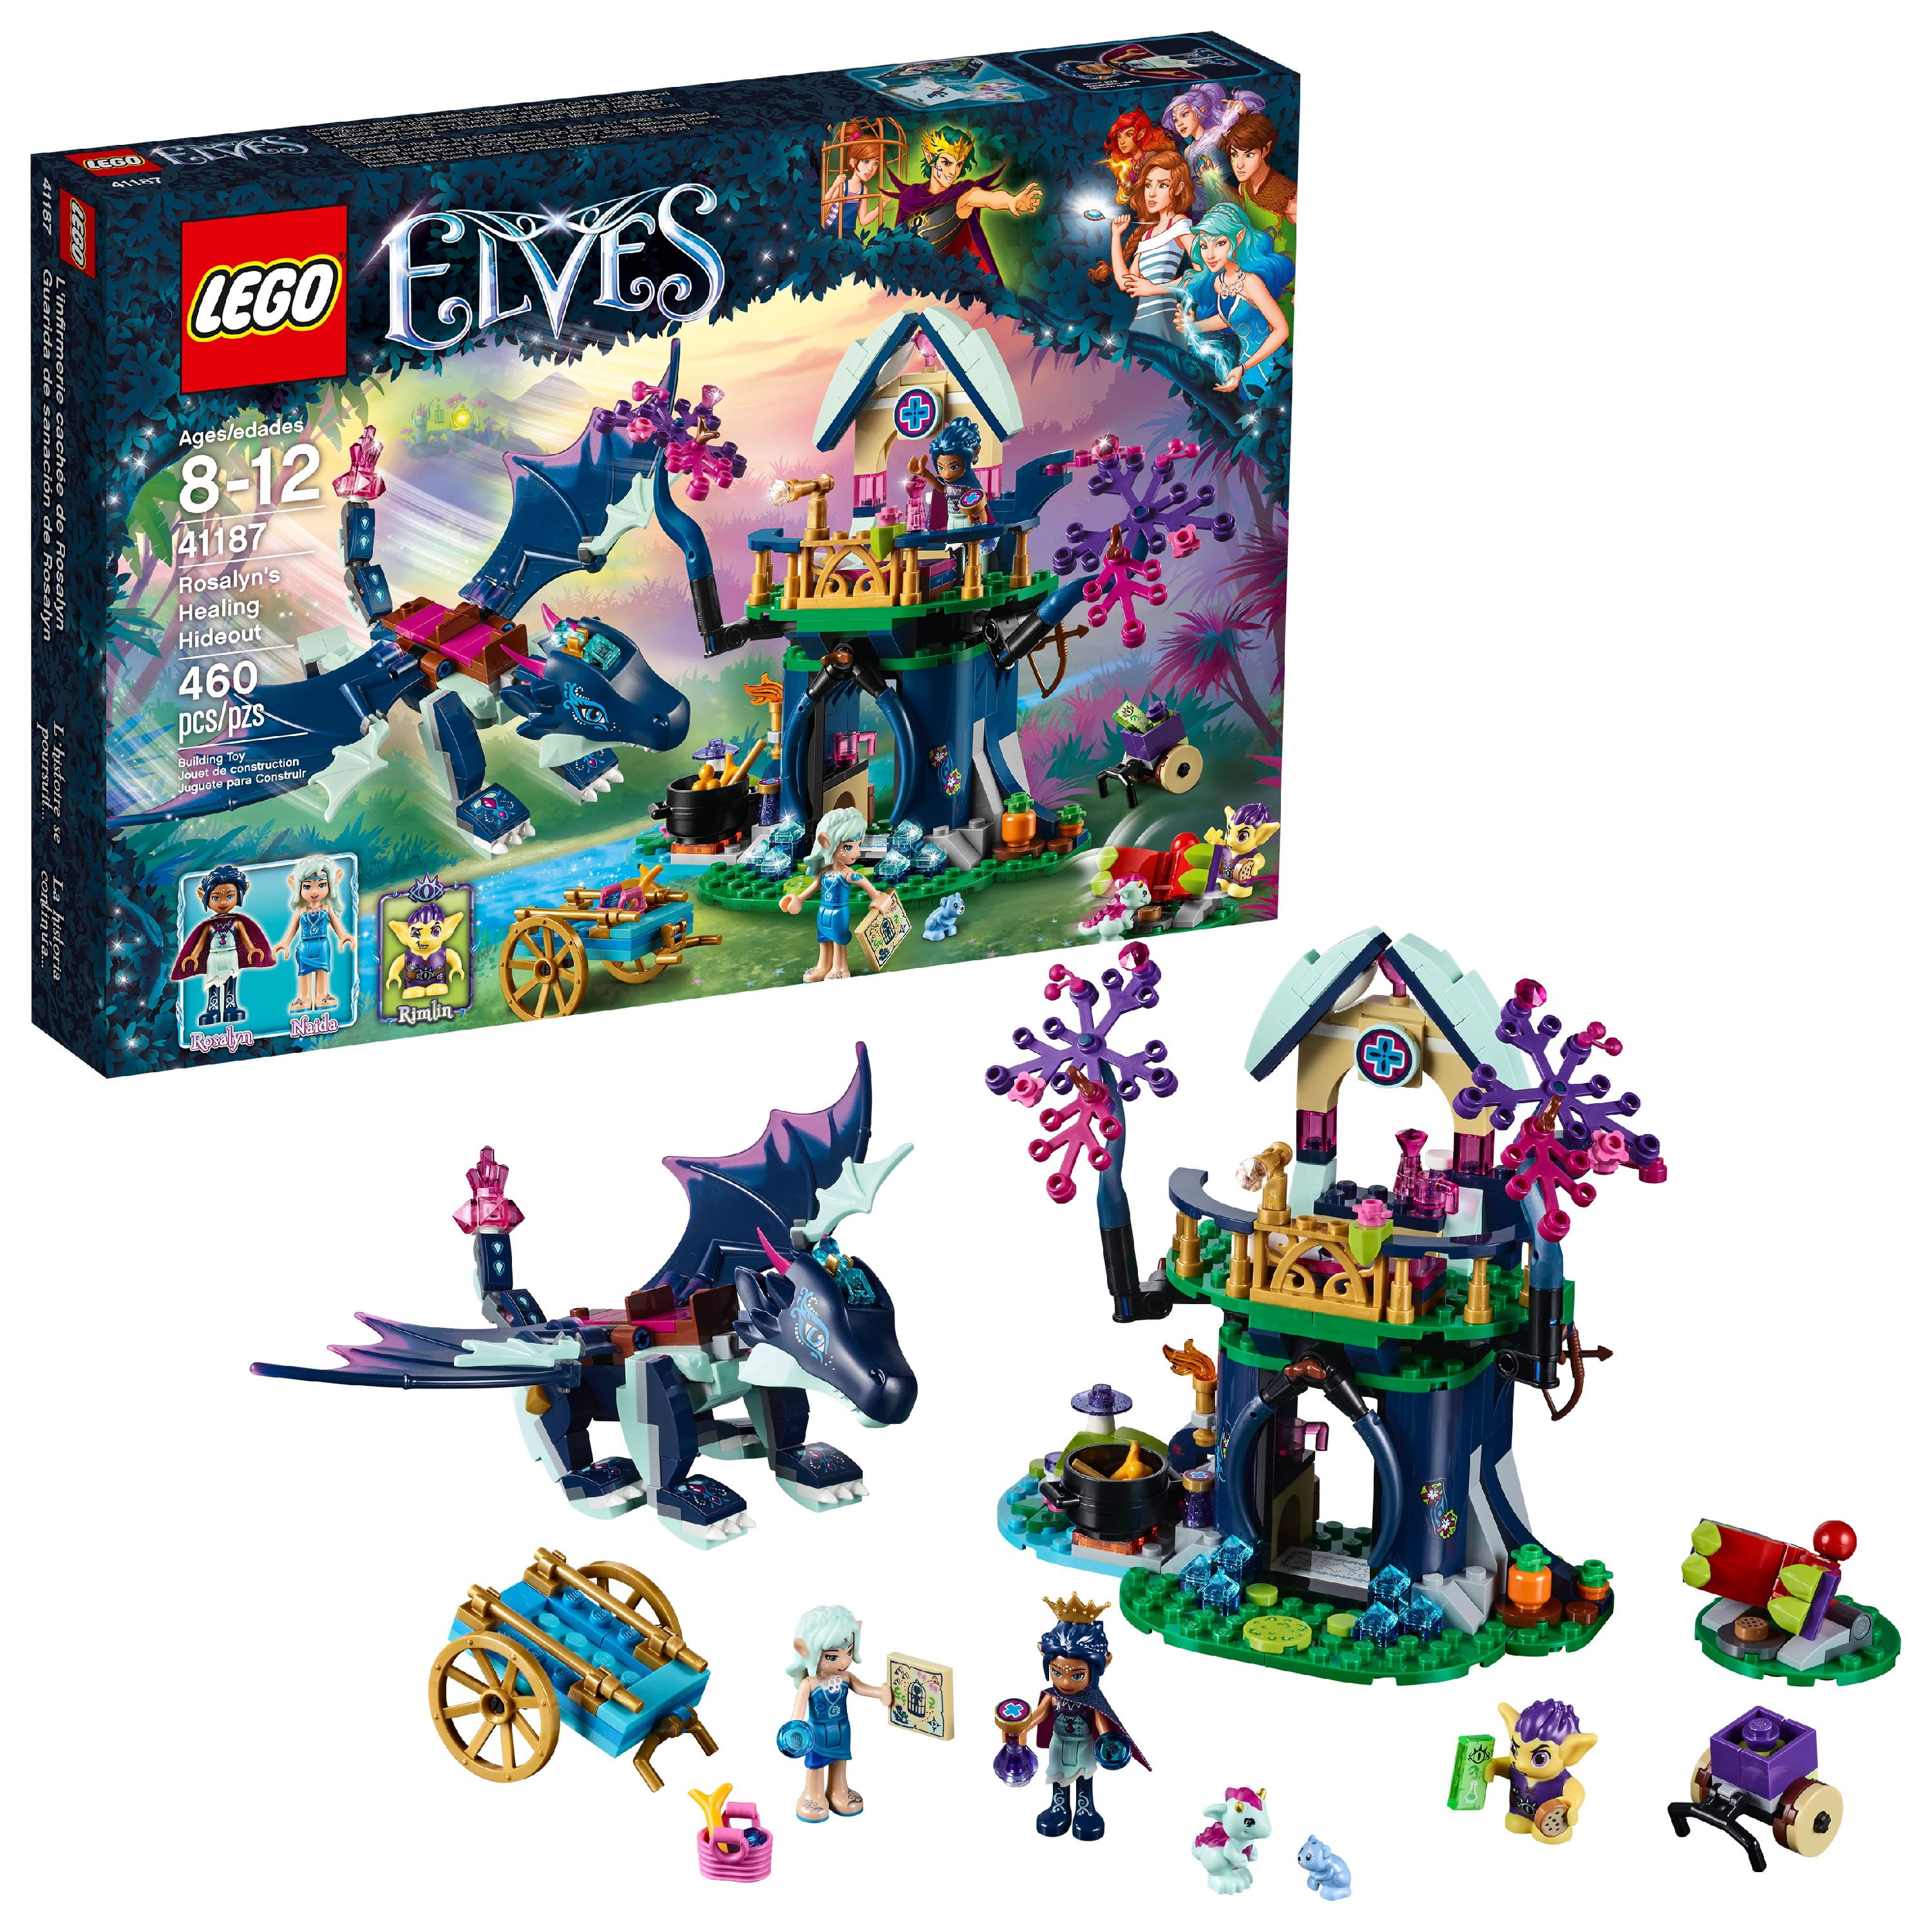 Lego Elves Rosalyn Minifigure 41187 New!